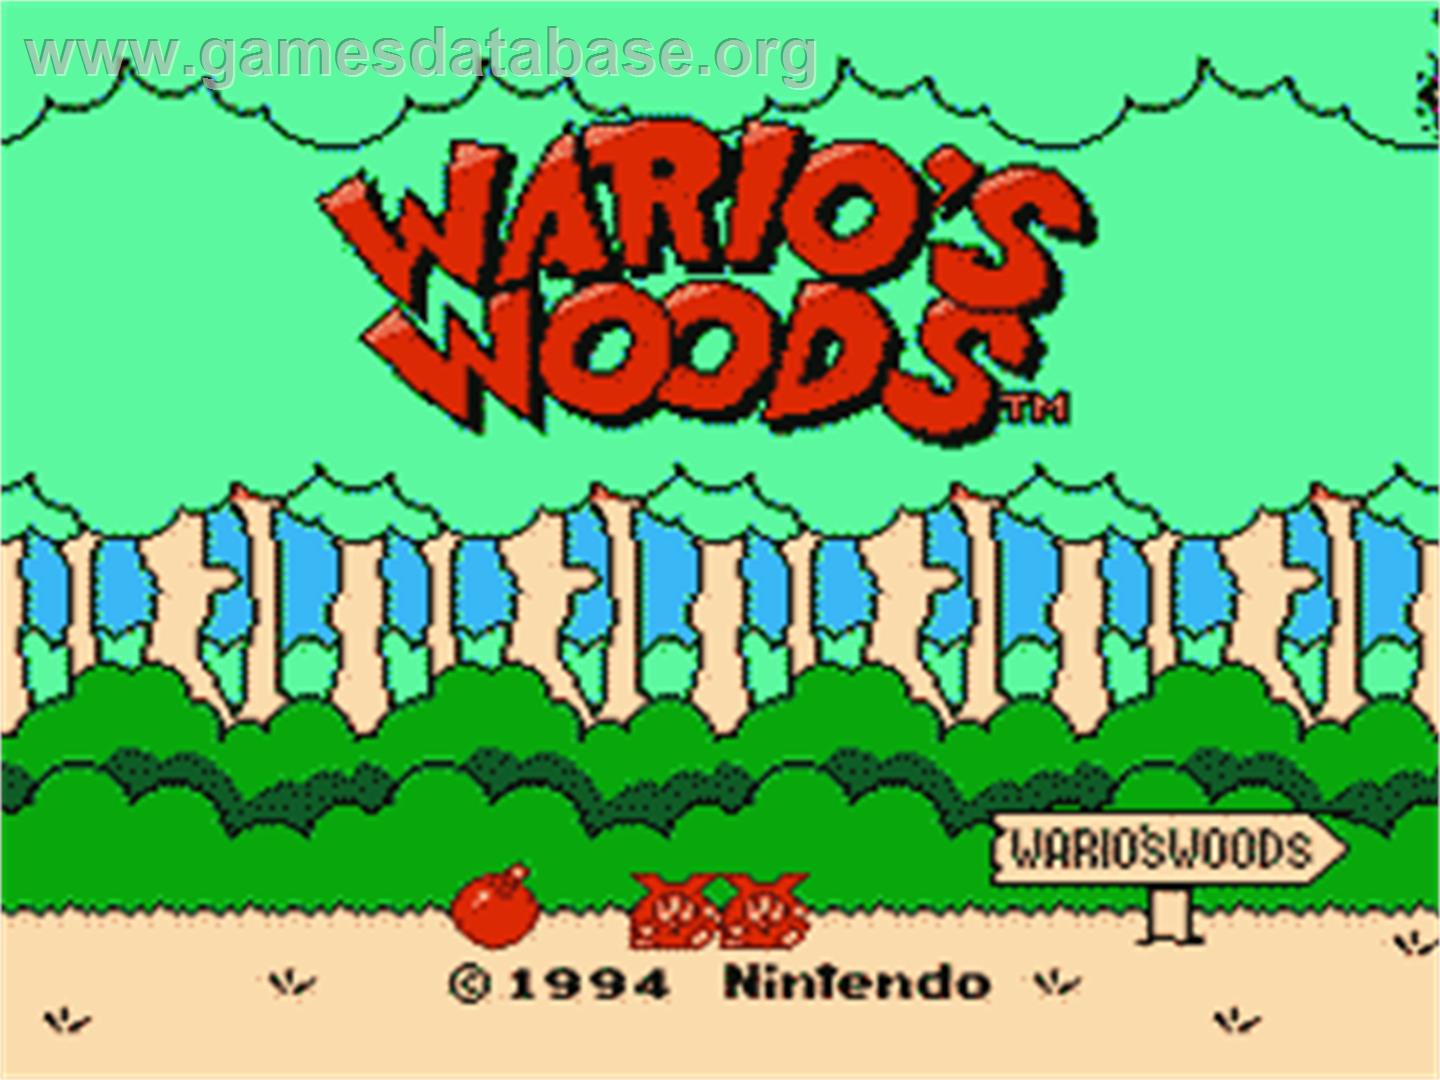 Wario's Woods - Nintendo NES - Artwork - Title Screen